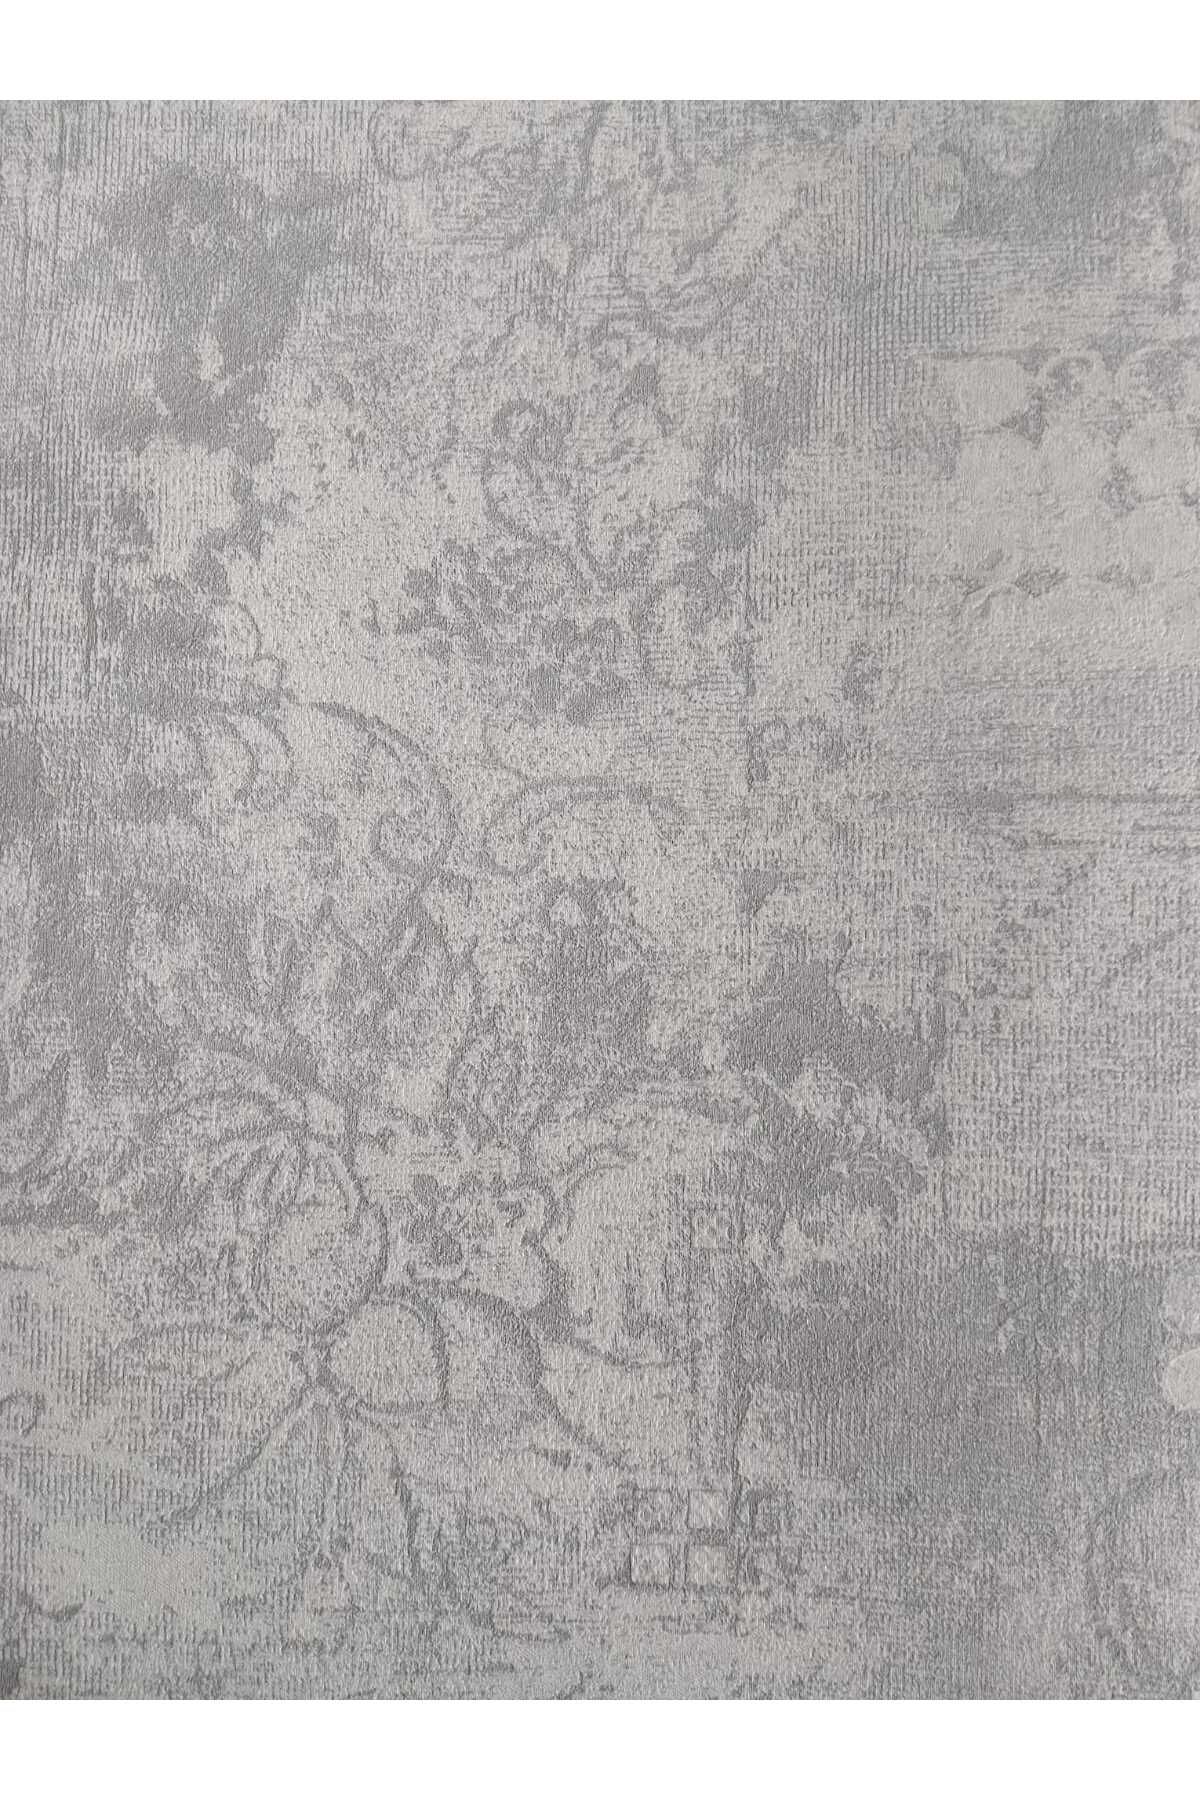 oskar Eskitme Desenli %100 Silinebilir Duvar Kağıdı (16m2)